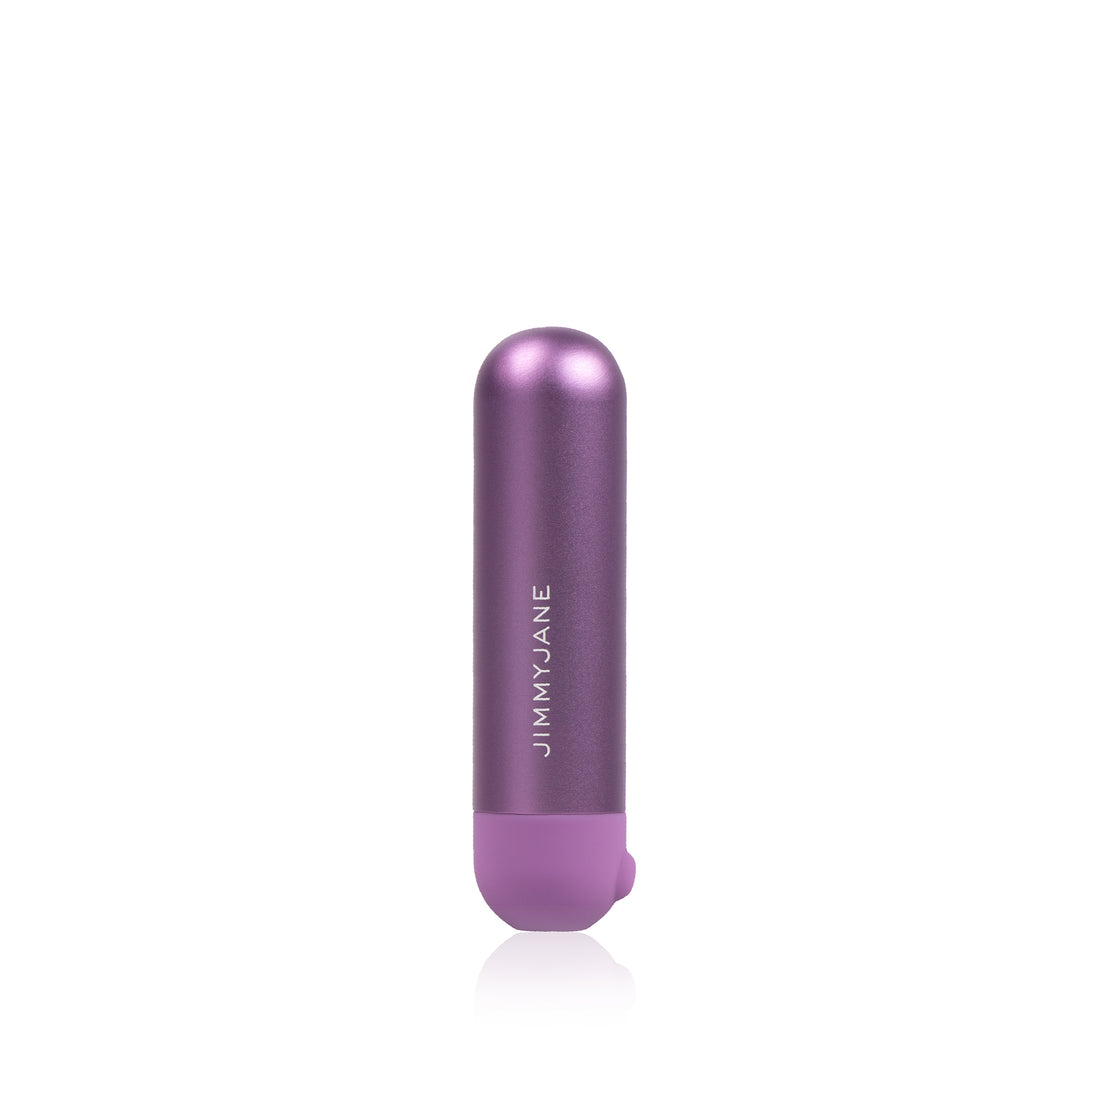 Mini bullet vibrator in the purple color, #purple